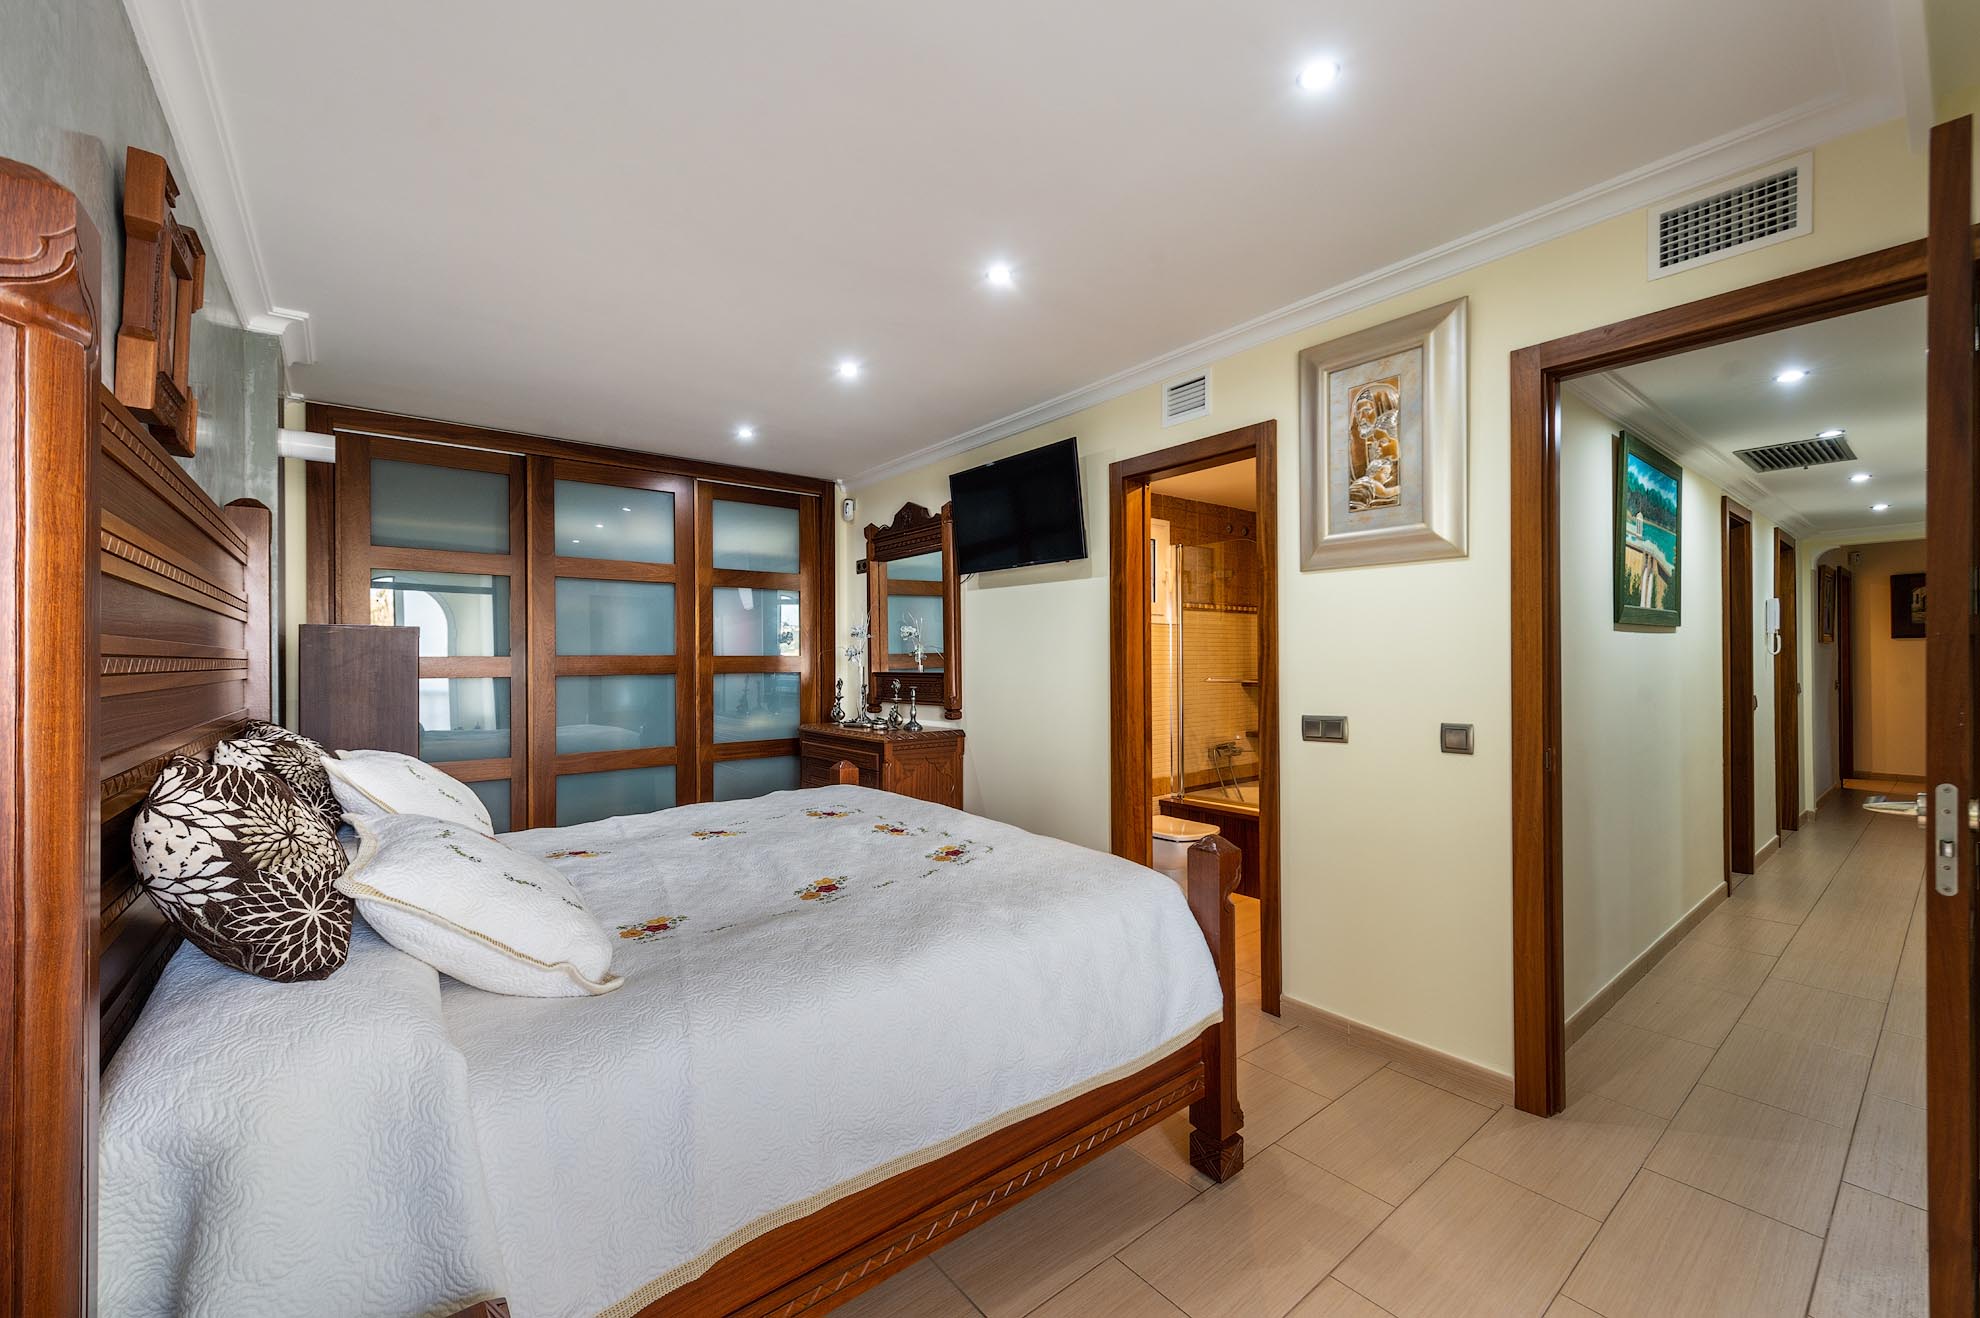 Apartamento de 3 dormitorios en venta en el edificio Brisol, Ibiza